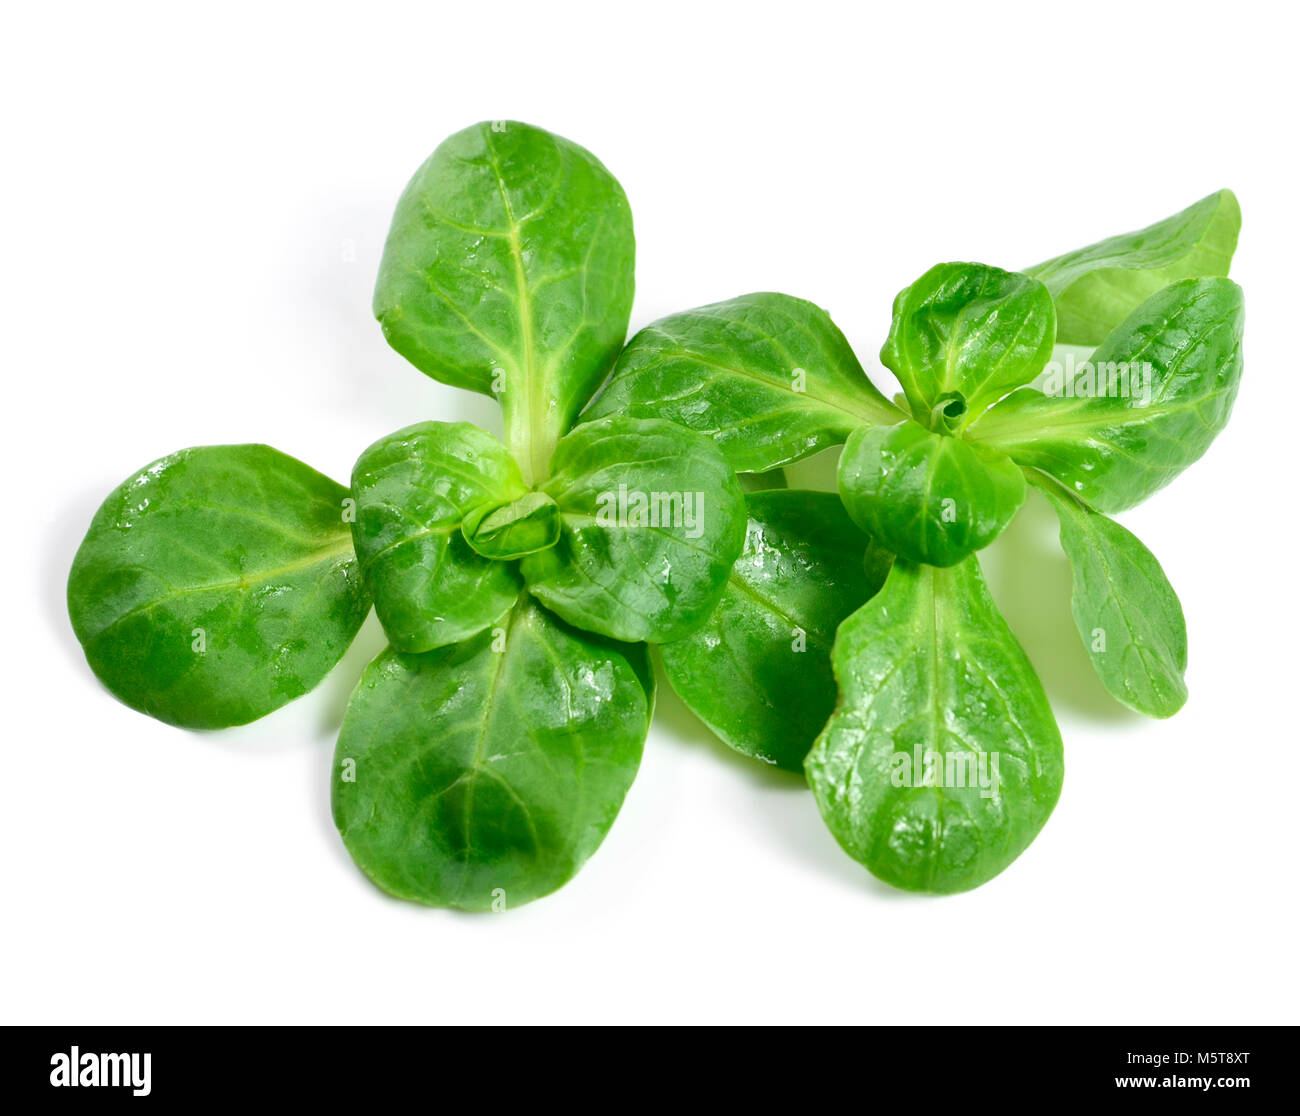 Frisch gewaschenen Feldsalat, auf weißem Hintergrund. Schneiden Sie Salat oder Salat, grüne Blätter auf Weiß. Gesunde Ernährung oder Diäten Szene. Stockfoto